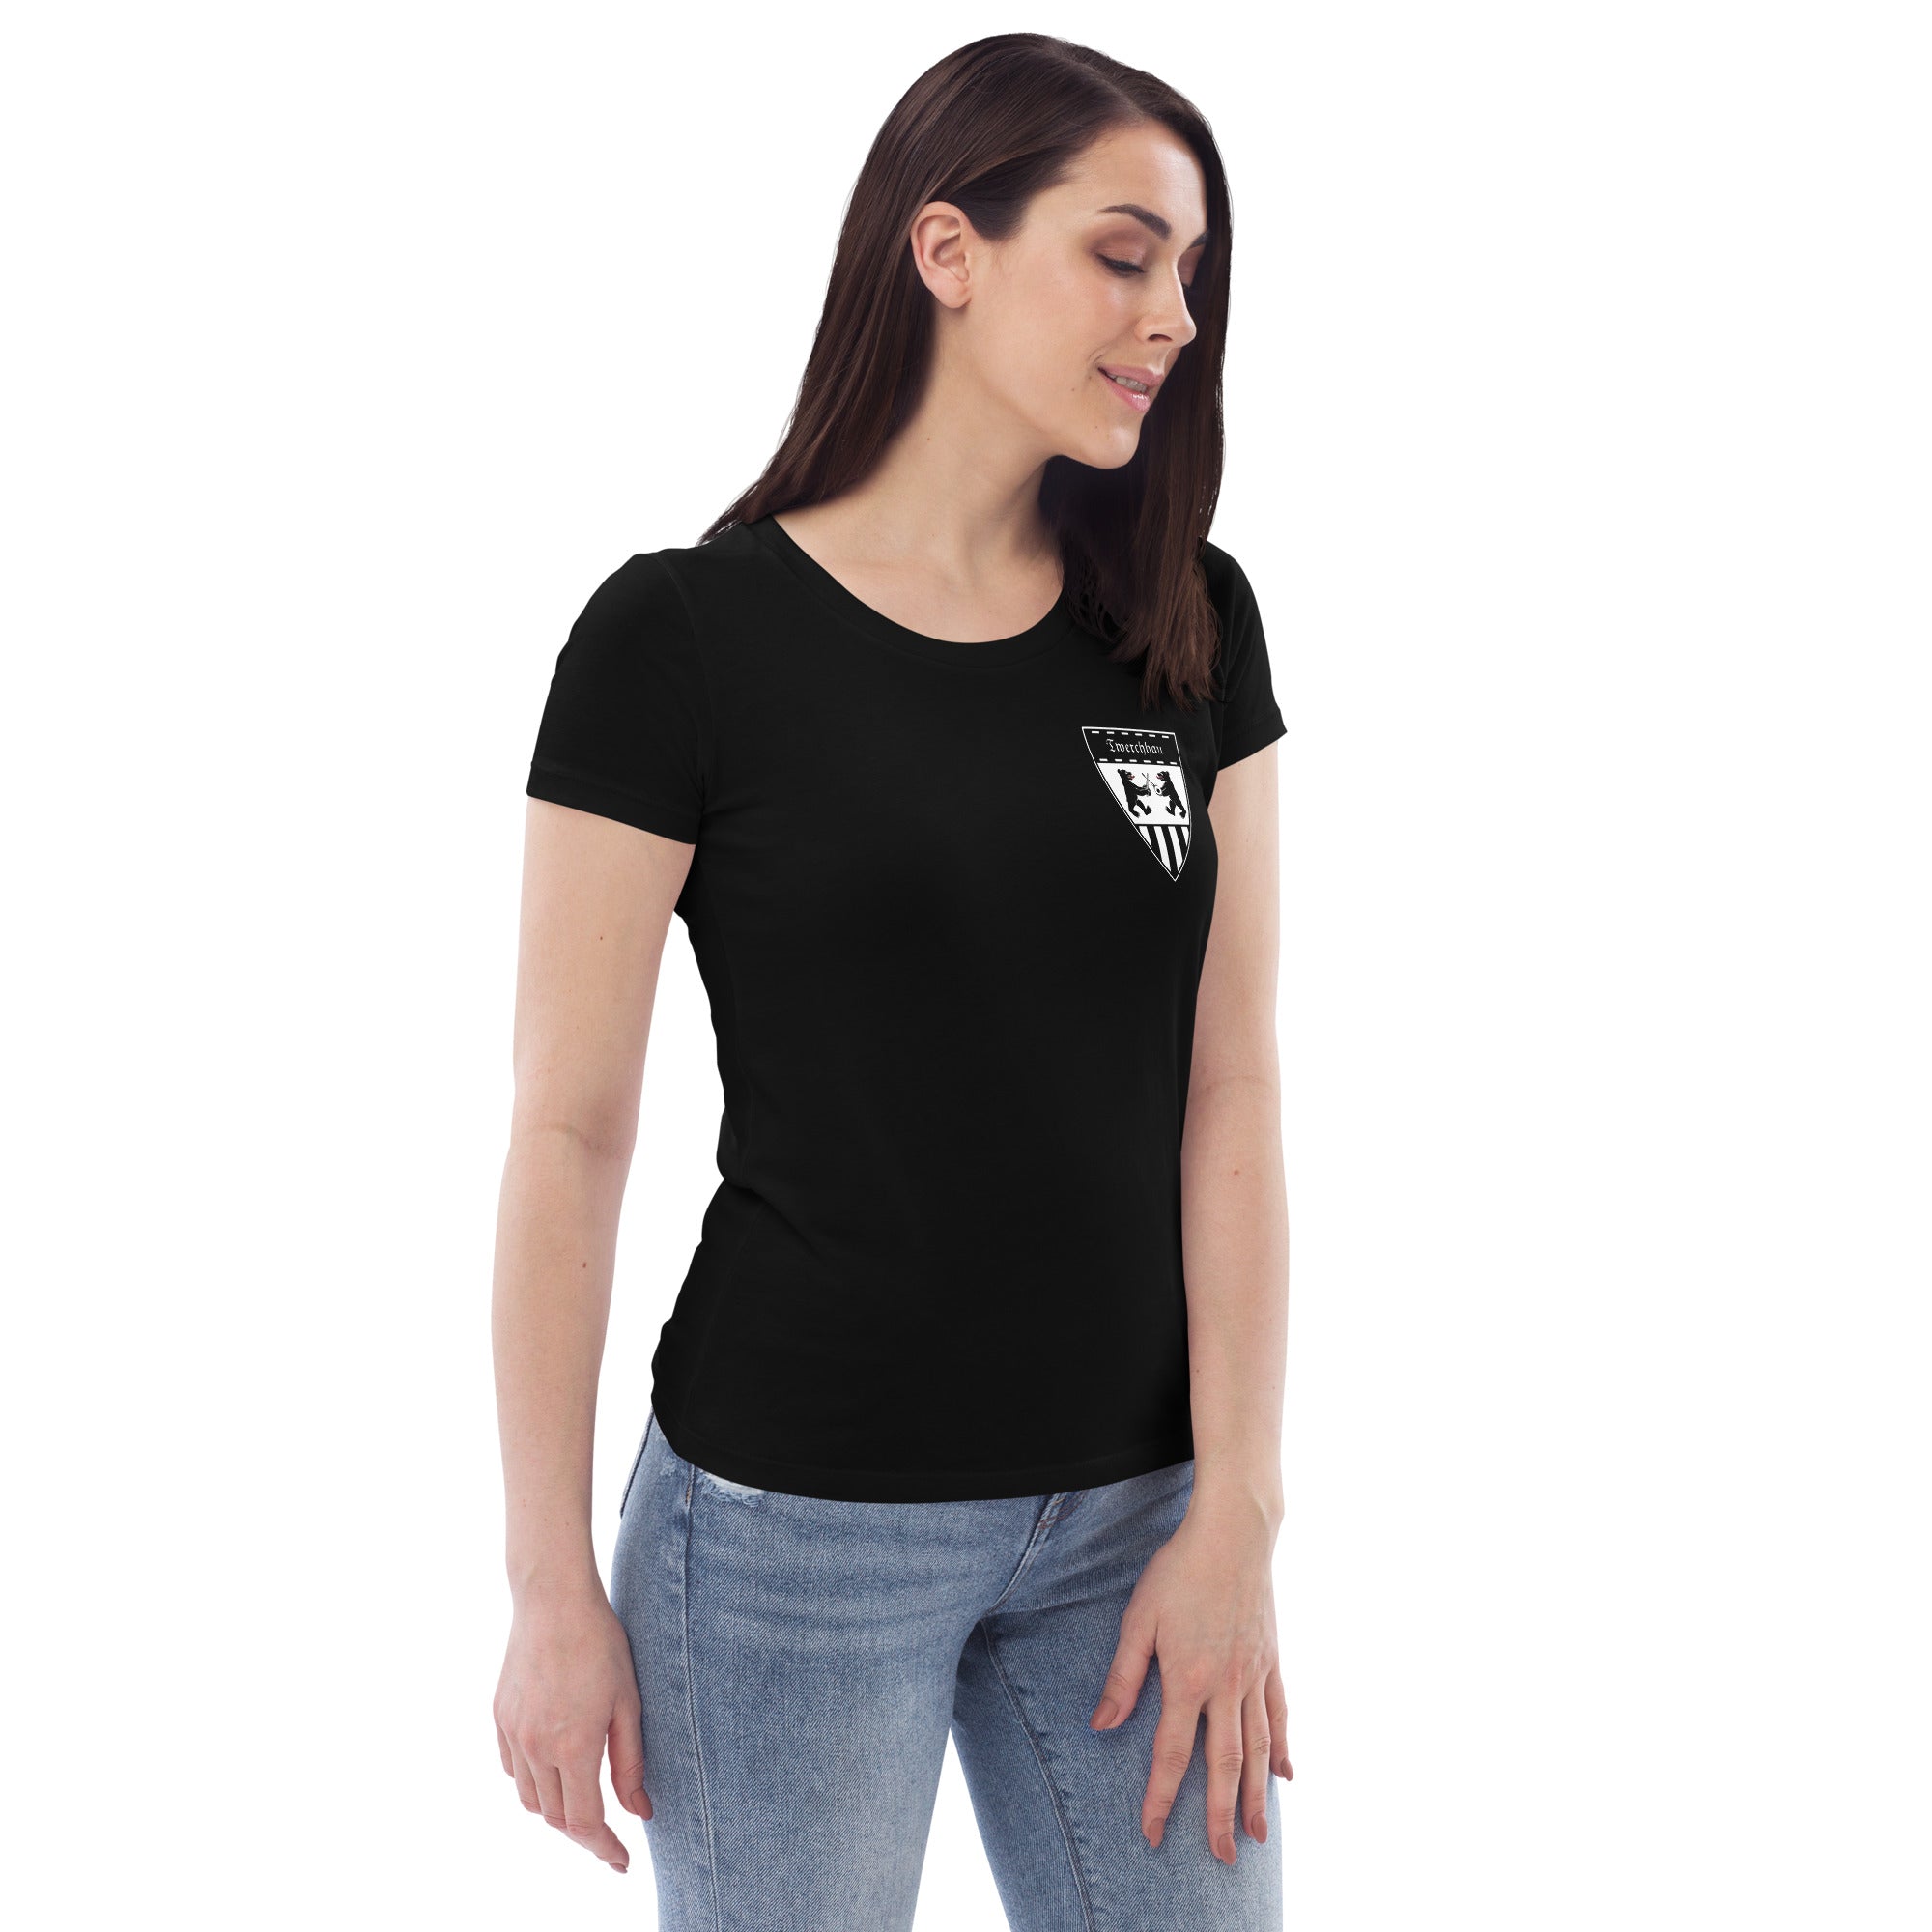 Twerchhau - Öko-T-Shirt für Damen